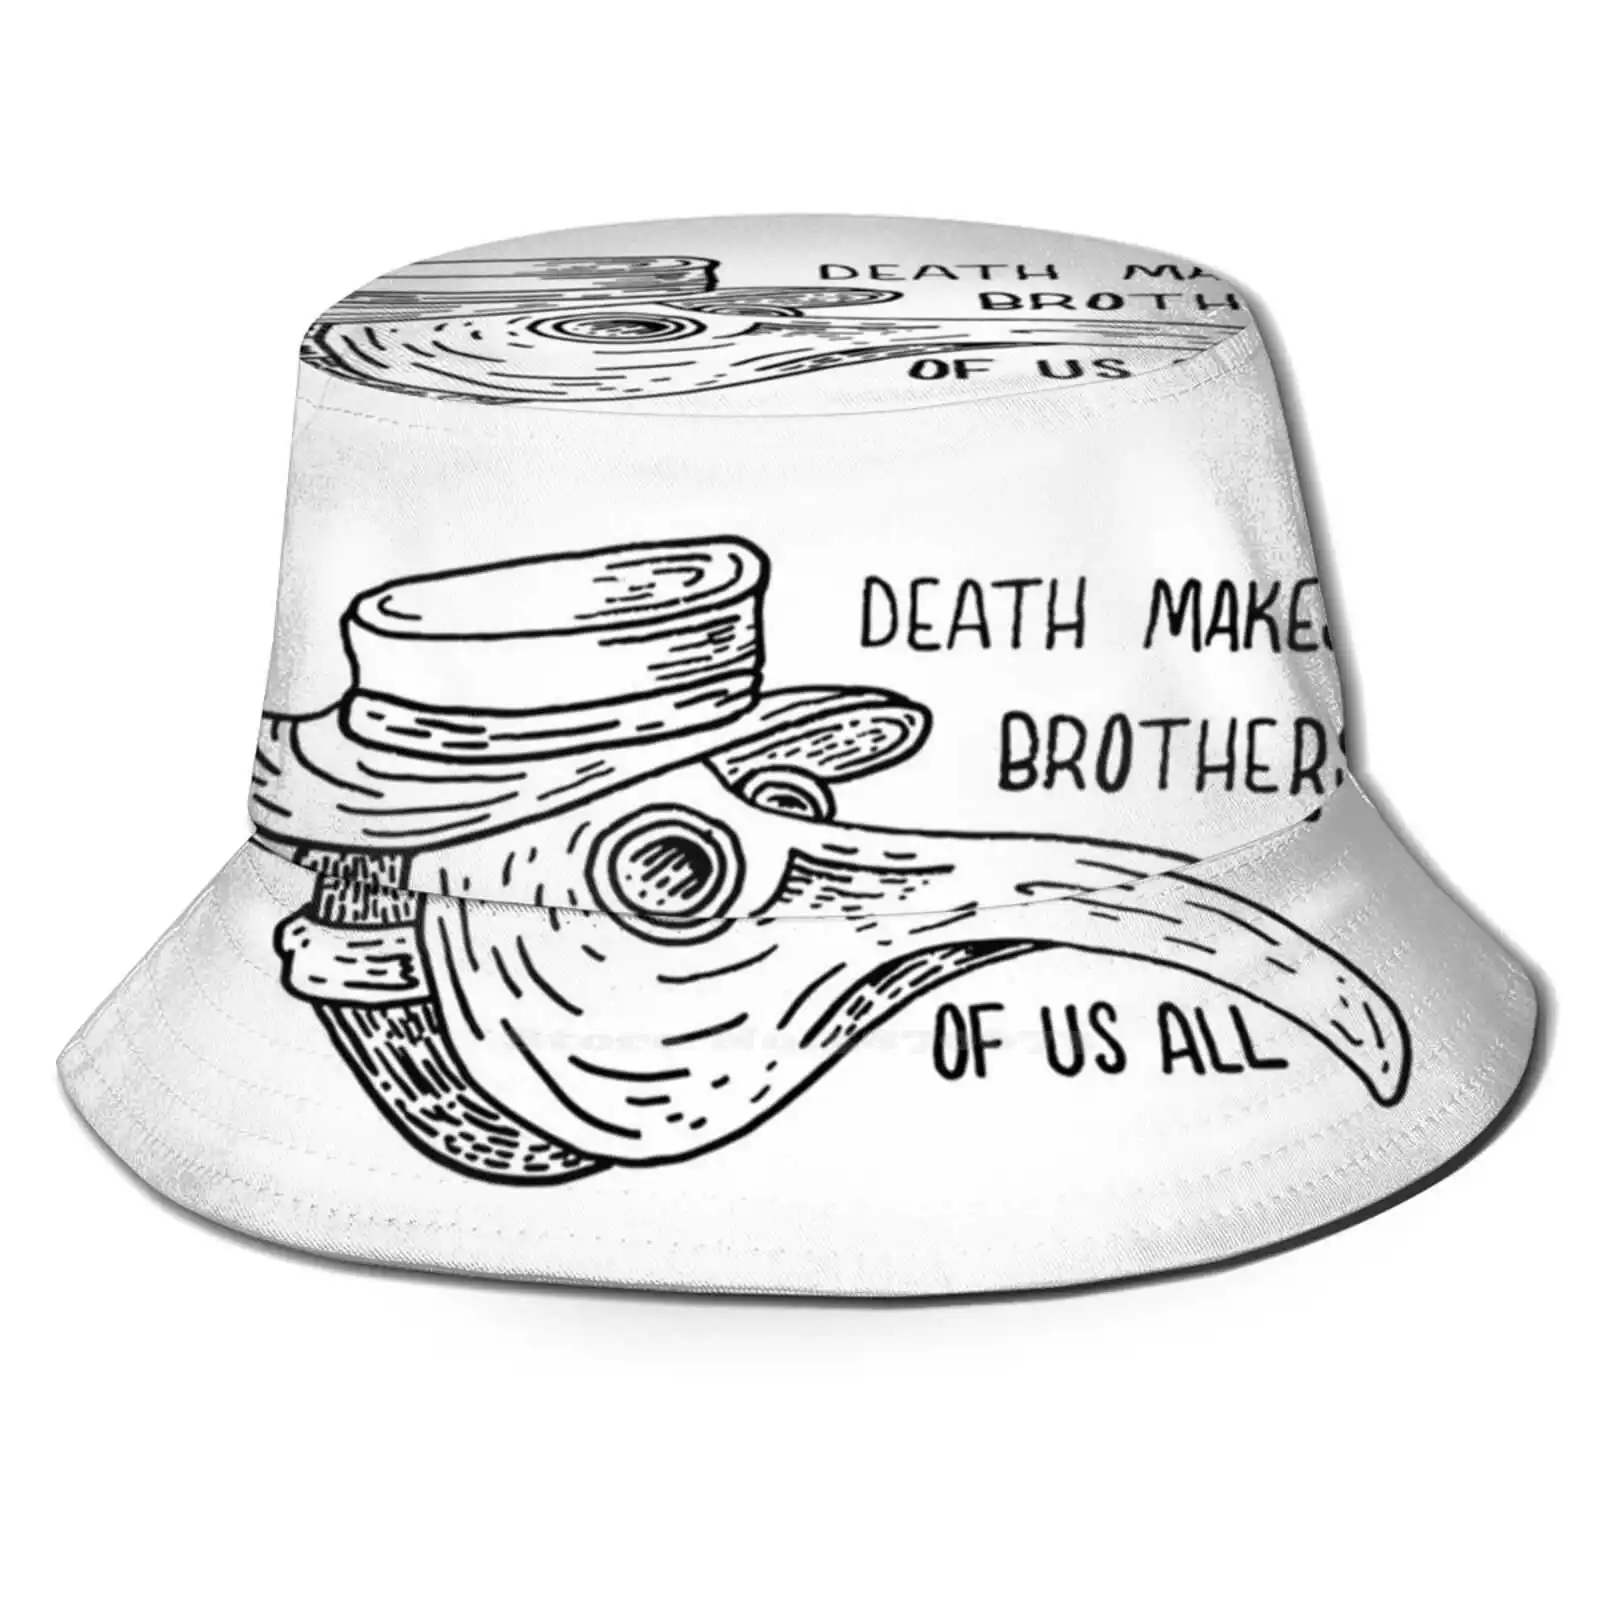 

Шляпа от солнца с надписью «Death Make Brothers Of Us», головной убор в Корейском стиле, в стиле панк, Хардкор, для мужчин и женщин, для отдыха на природе